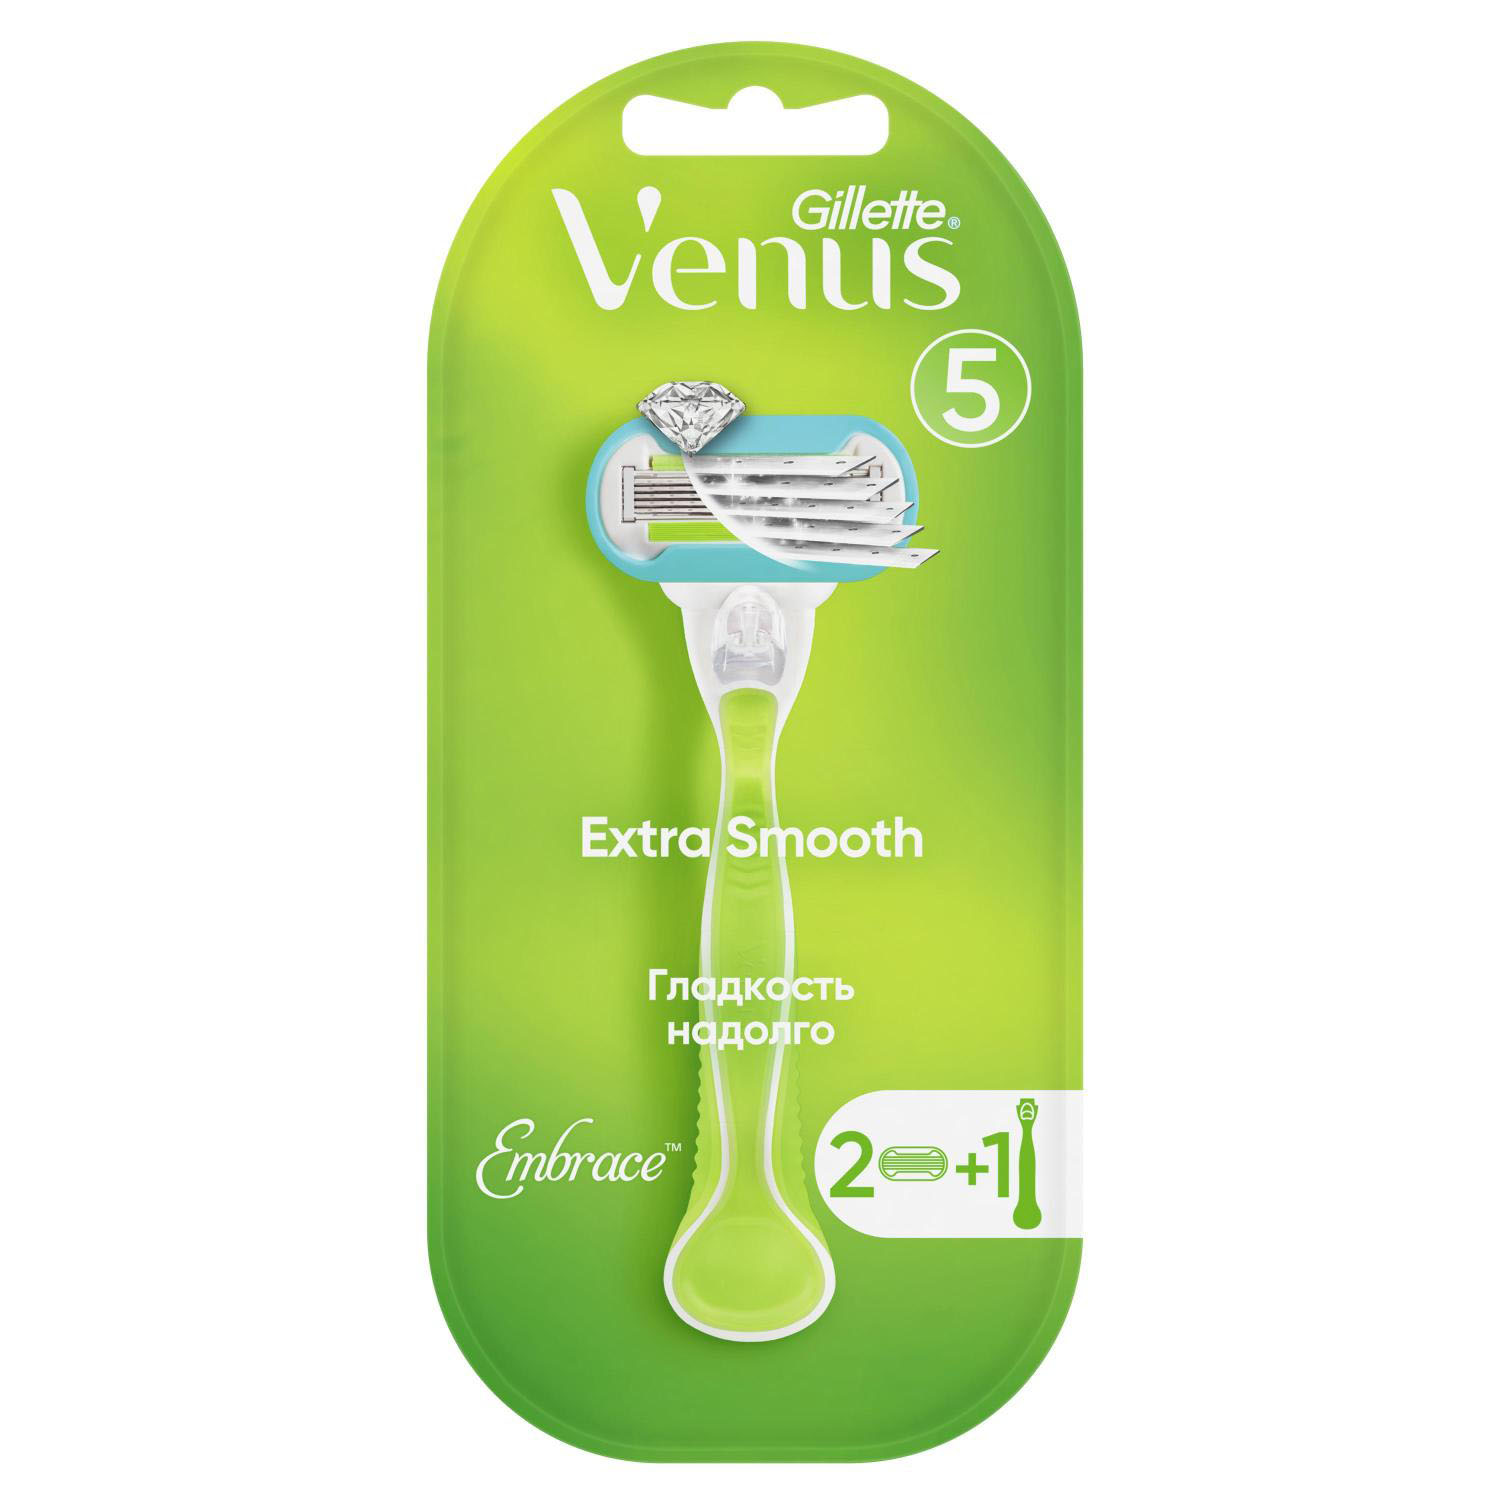 Жиллетт станок для бритья Венус Эмбрейс +2кассеты жиллетт станок для бритья венус 1кассета